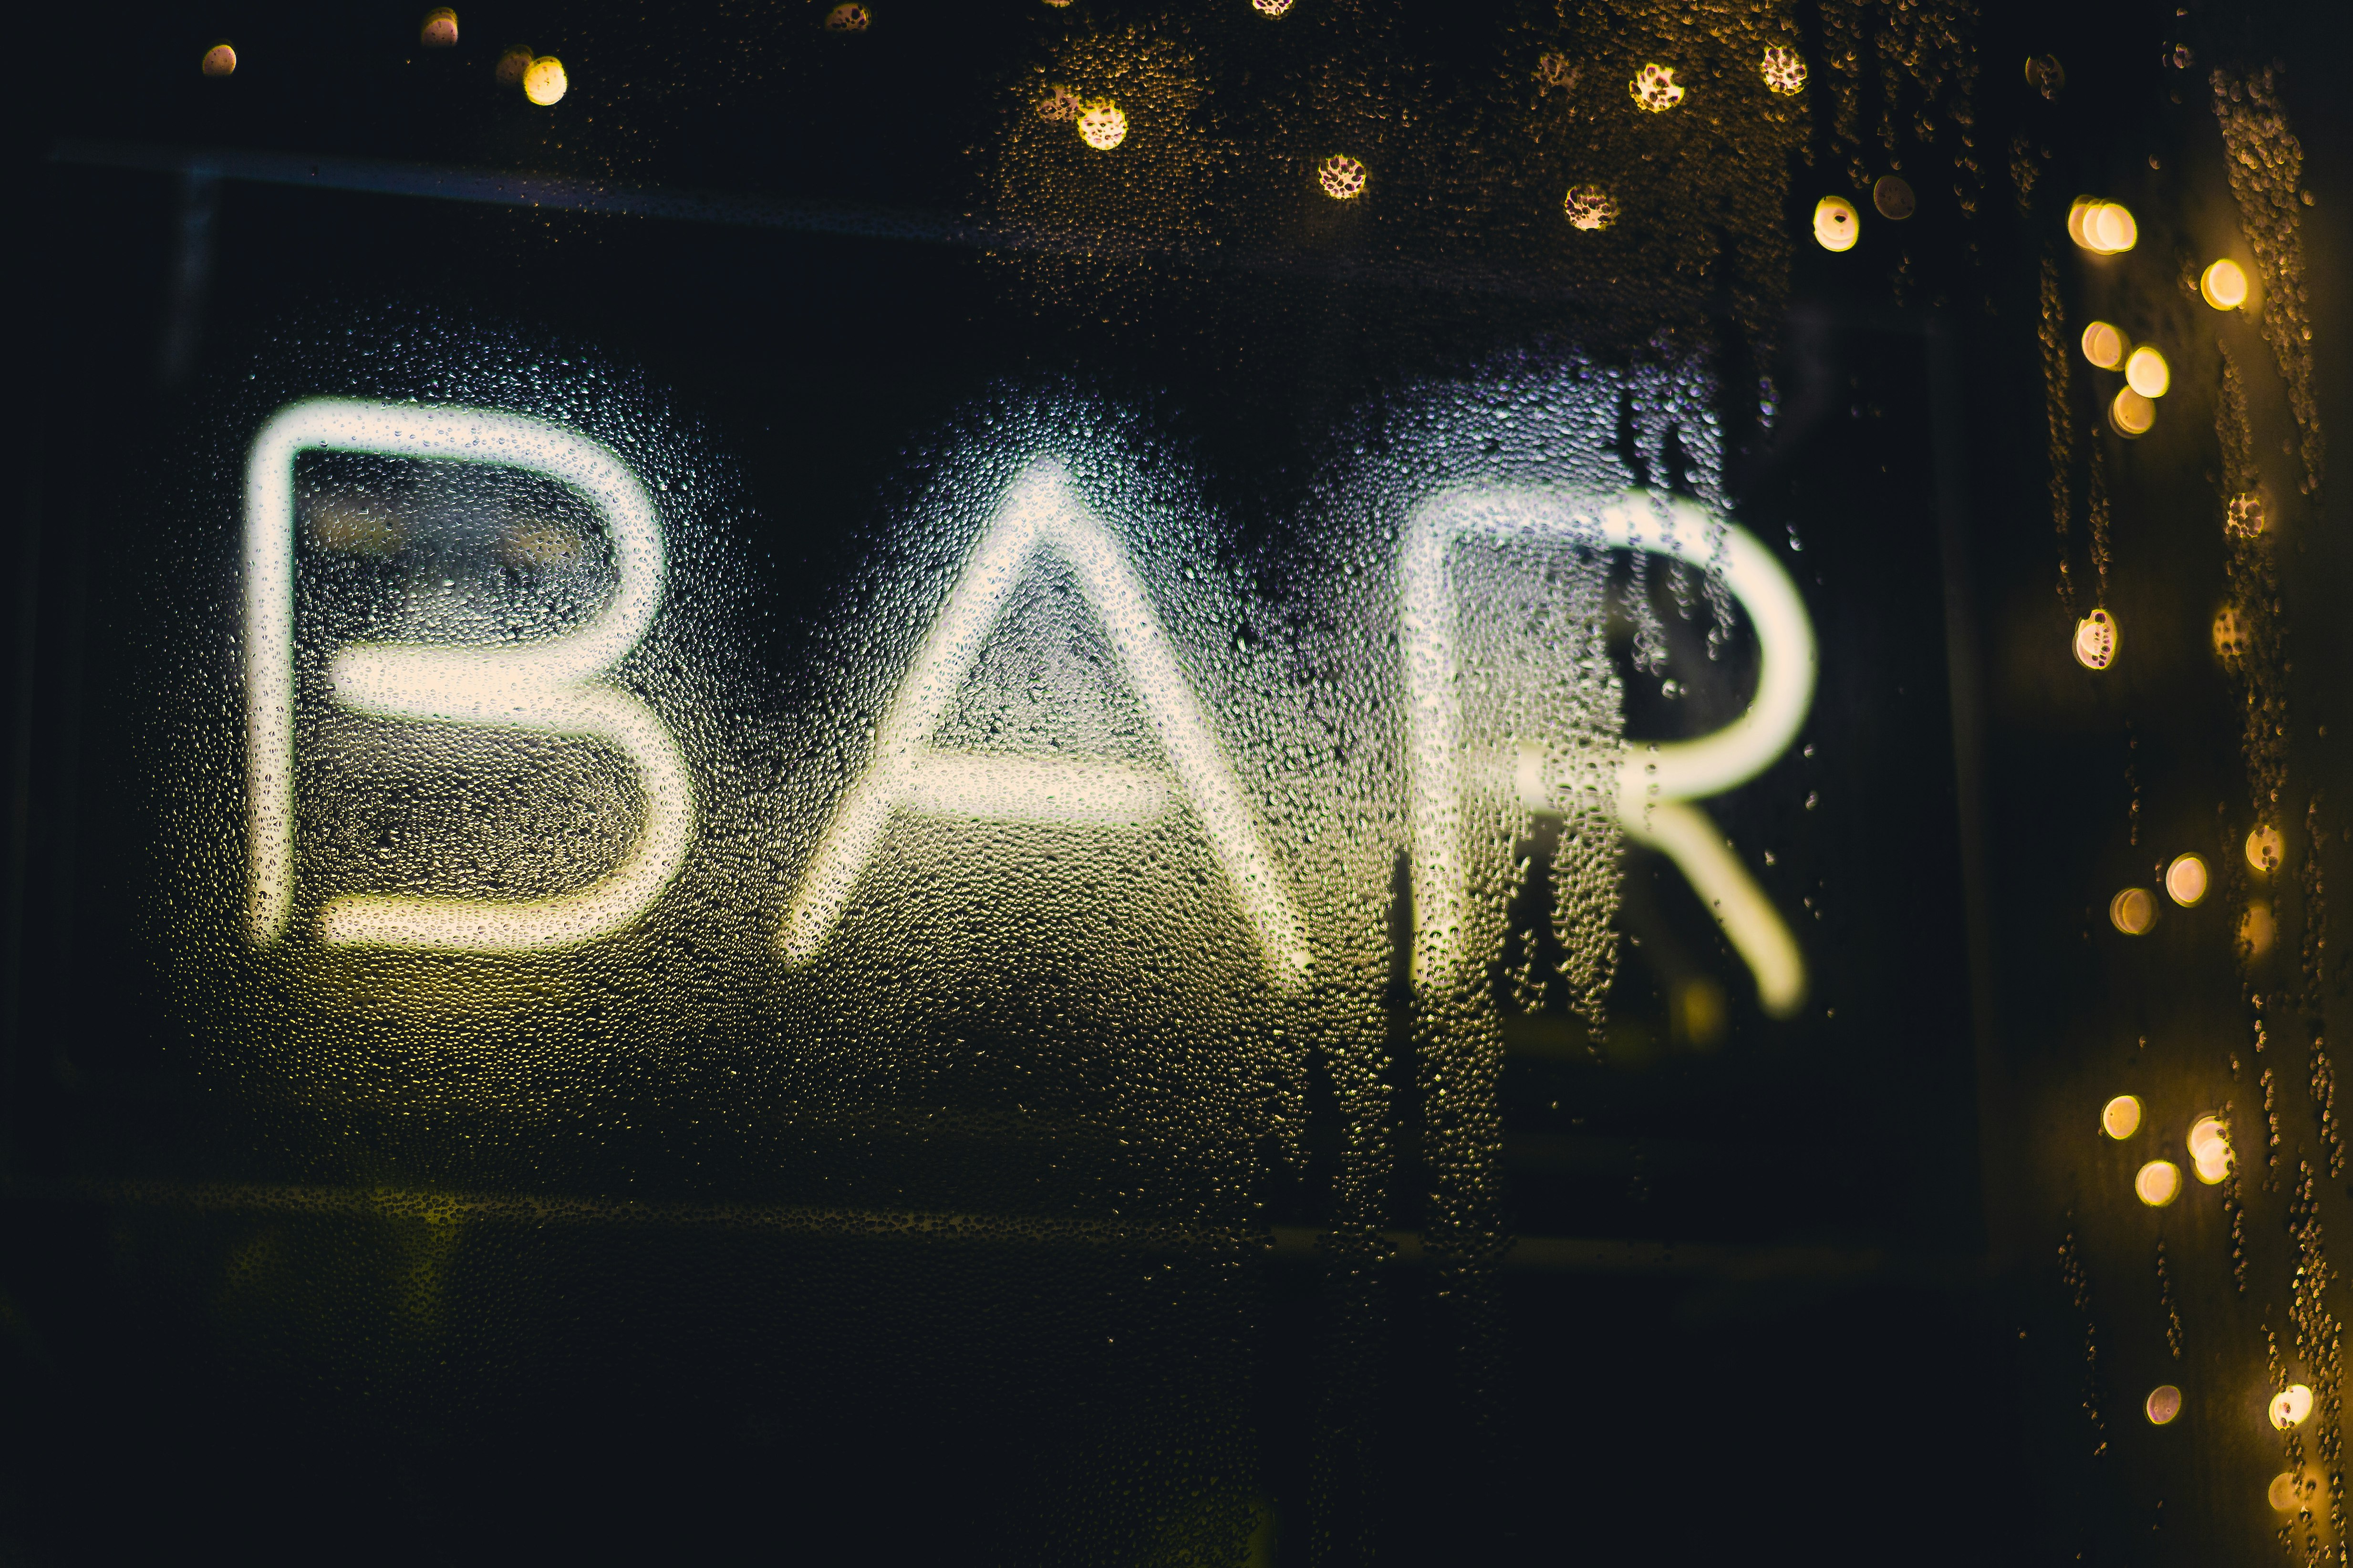 LED bar signage